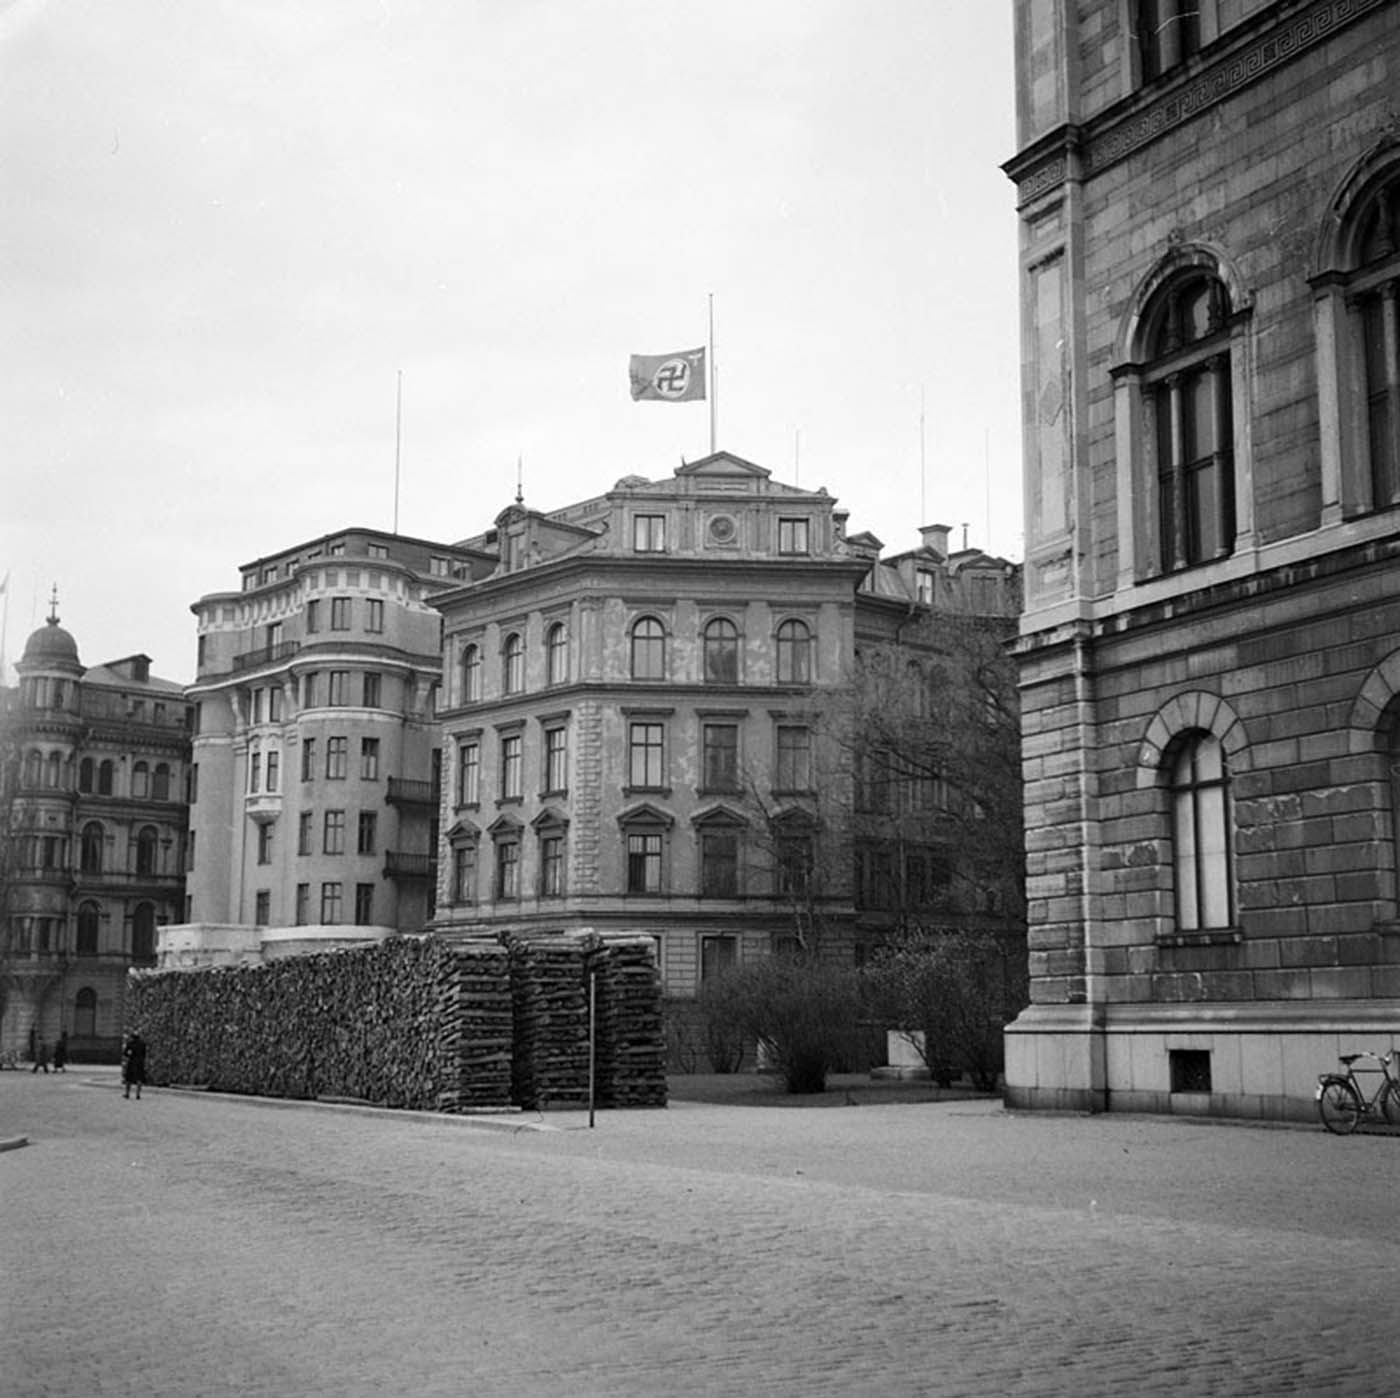 L'ambassade d'allemagne, en Suède, battant pavillon en berne le jour de Hitler est mort, 1945